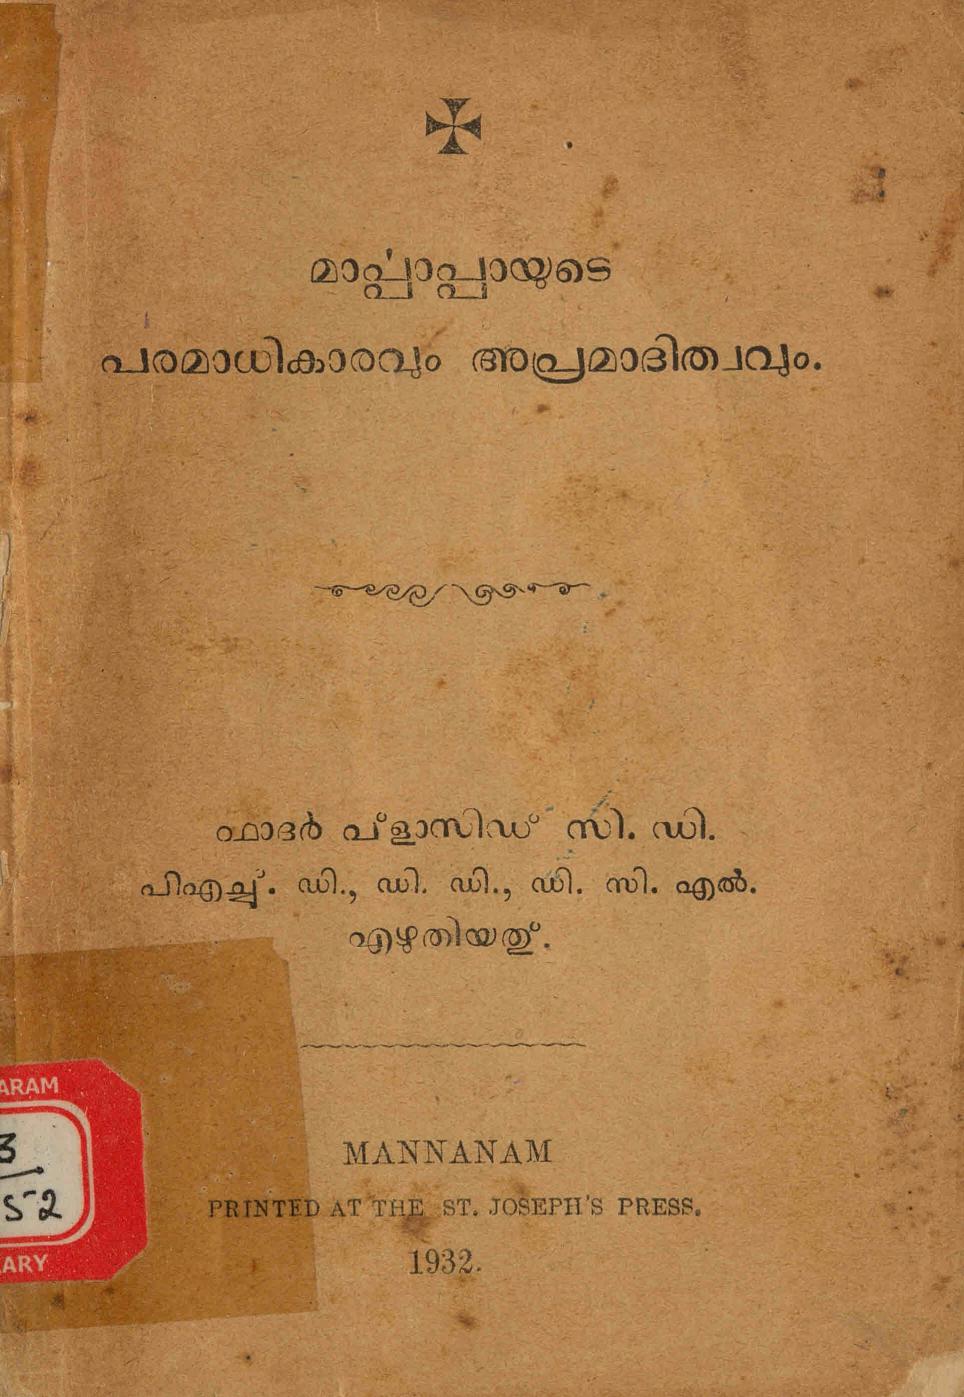  1932 - മാർപാപ്പയുടെ പരമാധികാരവും അപ്രമാദിത്വവും - പ്ലാസിഡ് പൊടിപ്പാറ